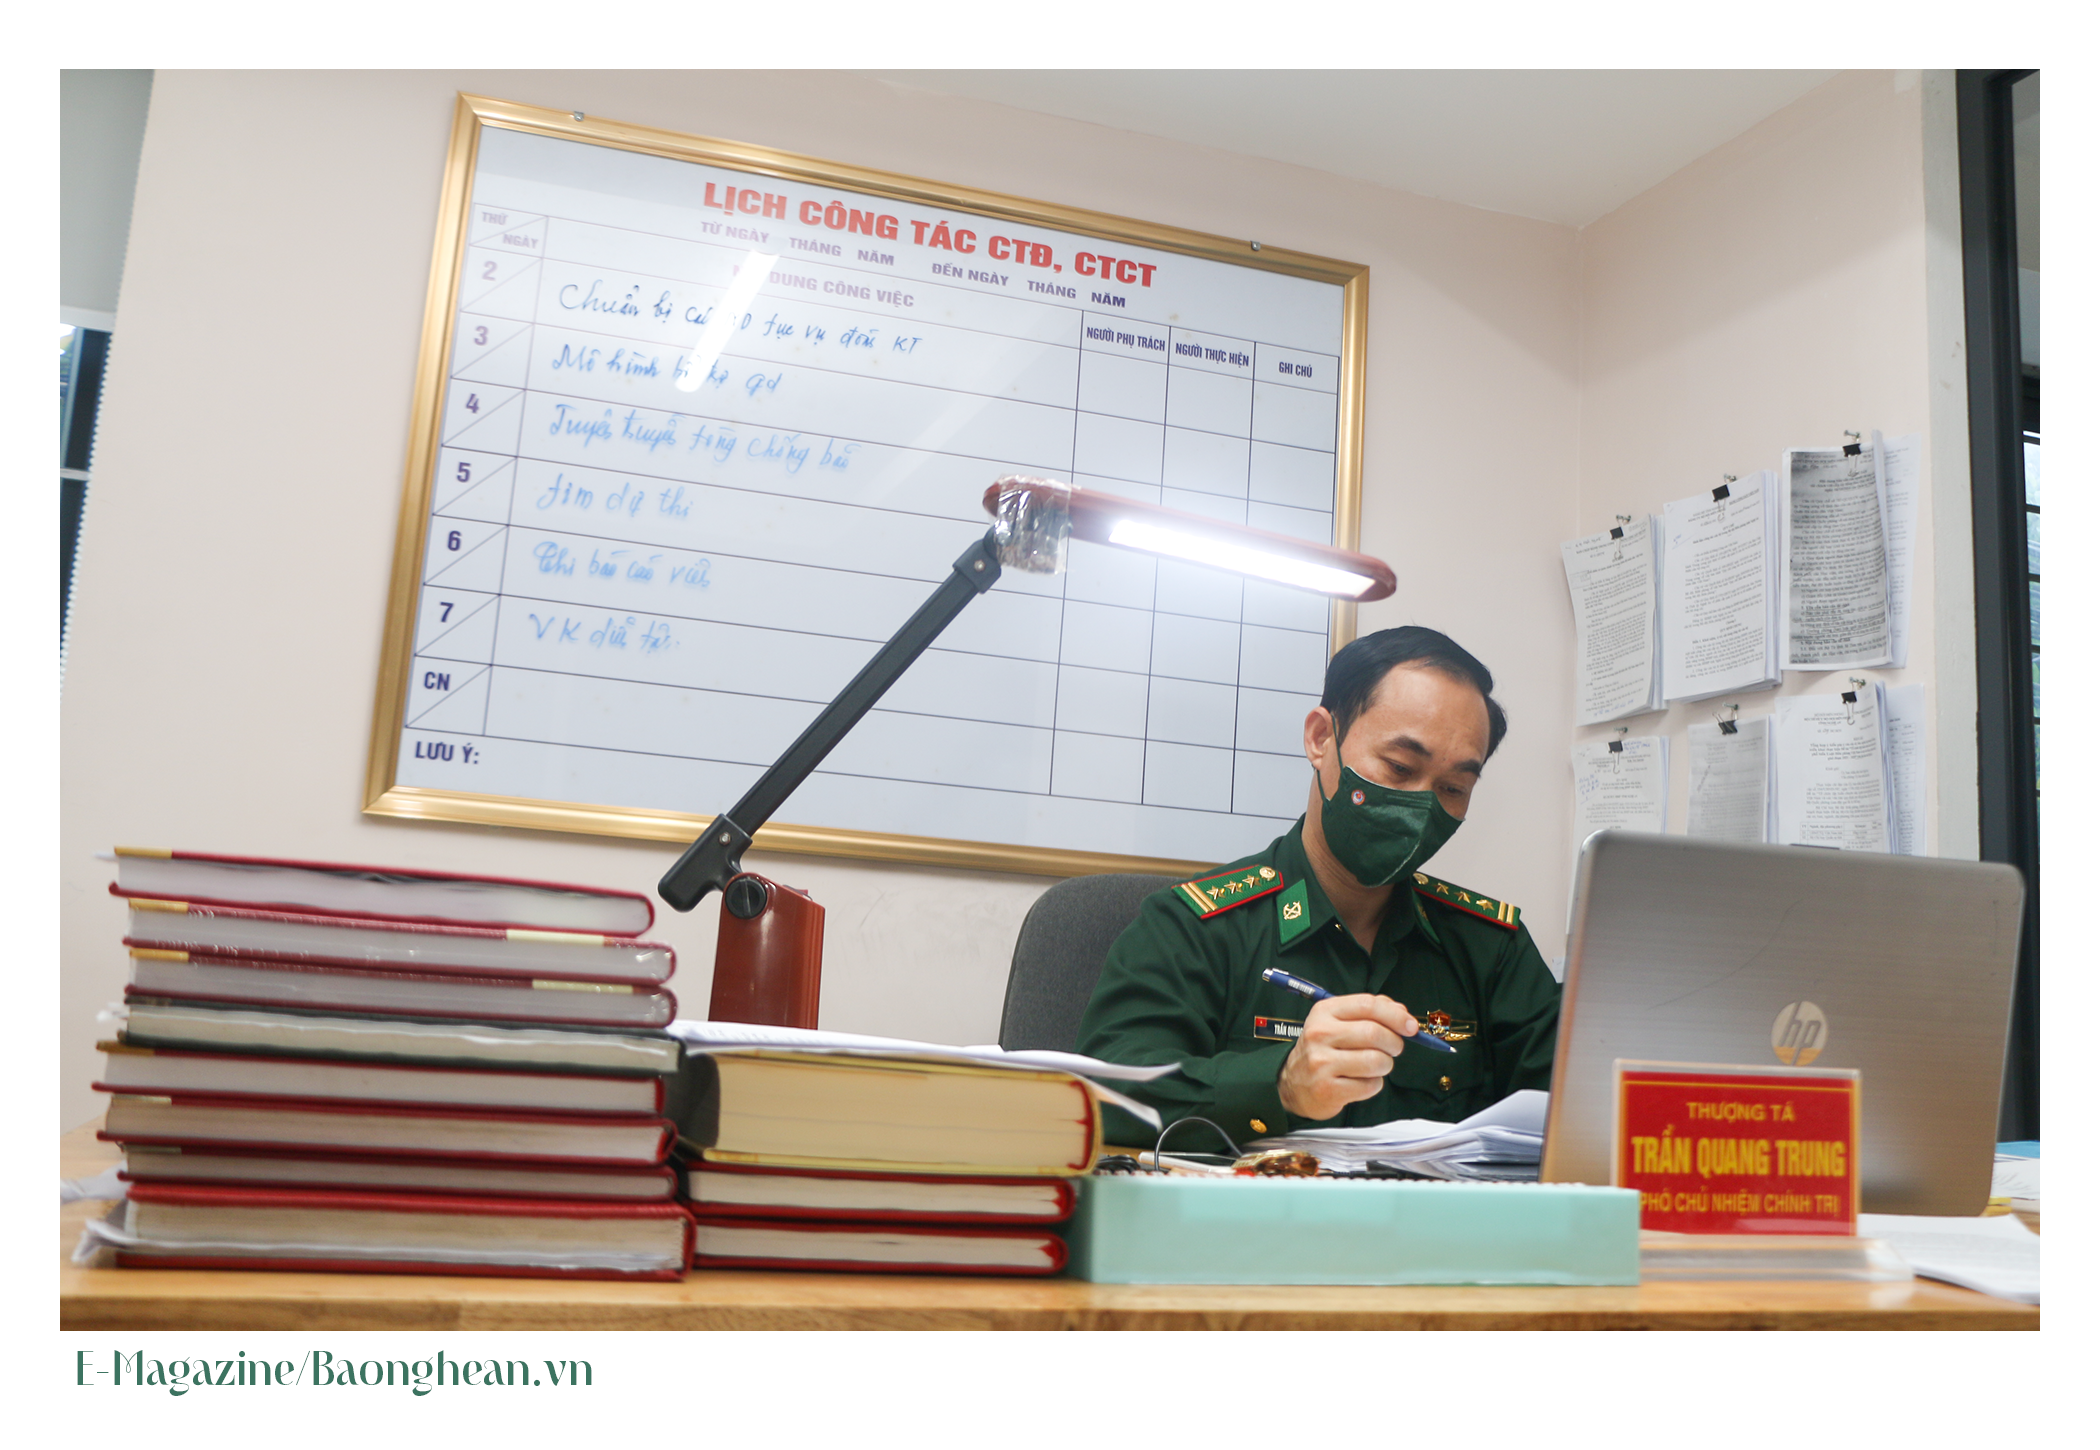 Trở về từ các hội thi, Thượng tá Trần Quang Trung lại lặng lẽ, miệt mài với công việc của mình. Ảnh: KL